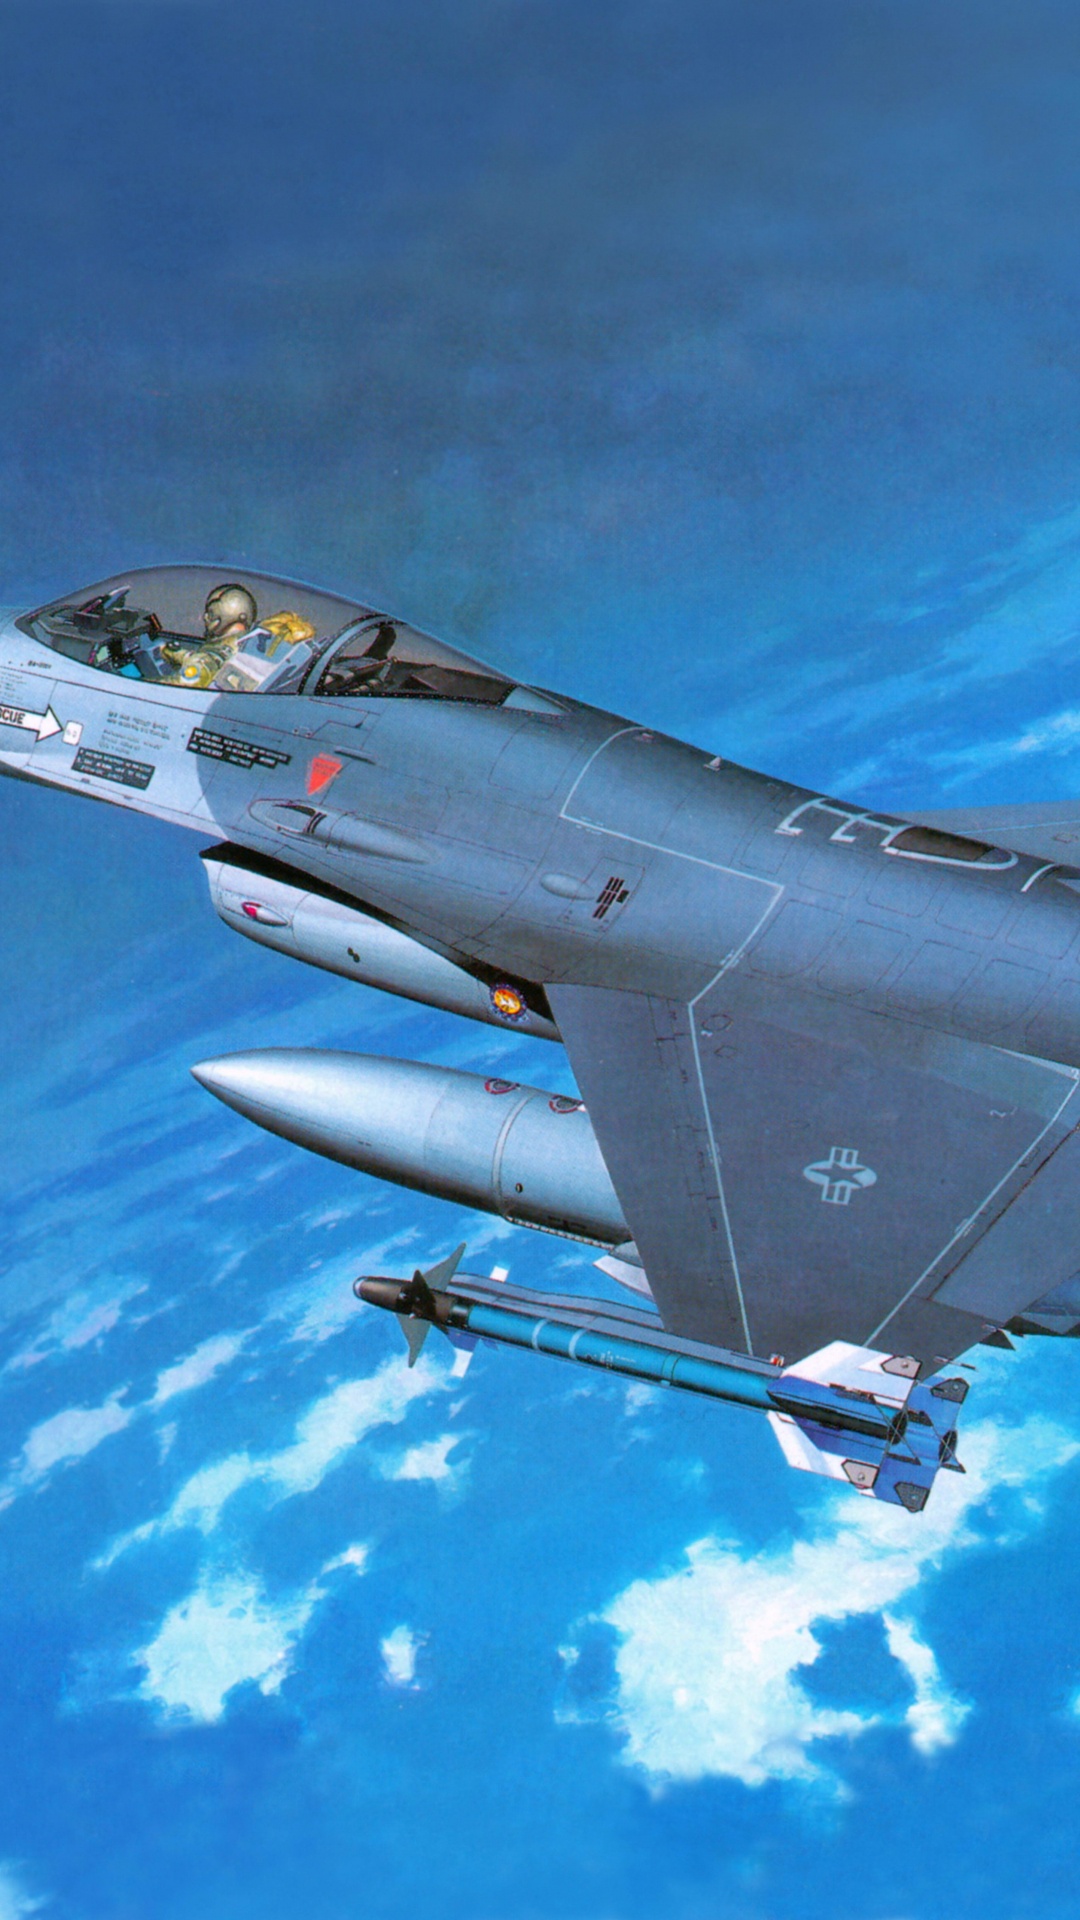 长谷川公司, 塑料模型, 军用飞机, 航空, 空军 壁纸 1080x1920 允许